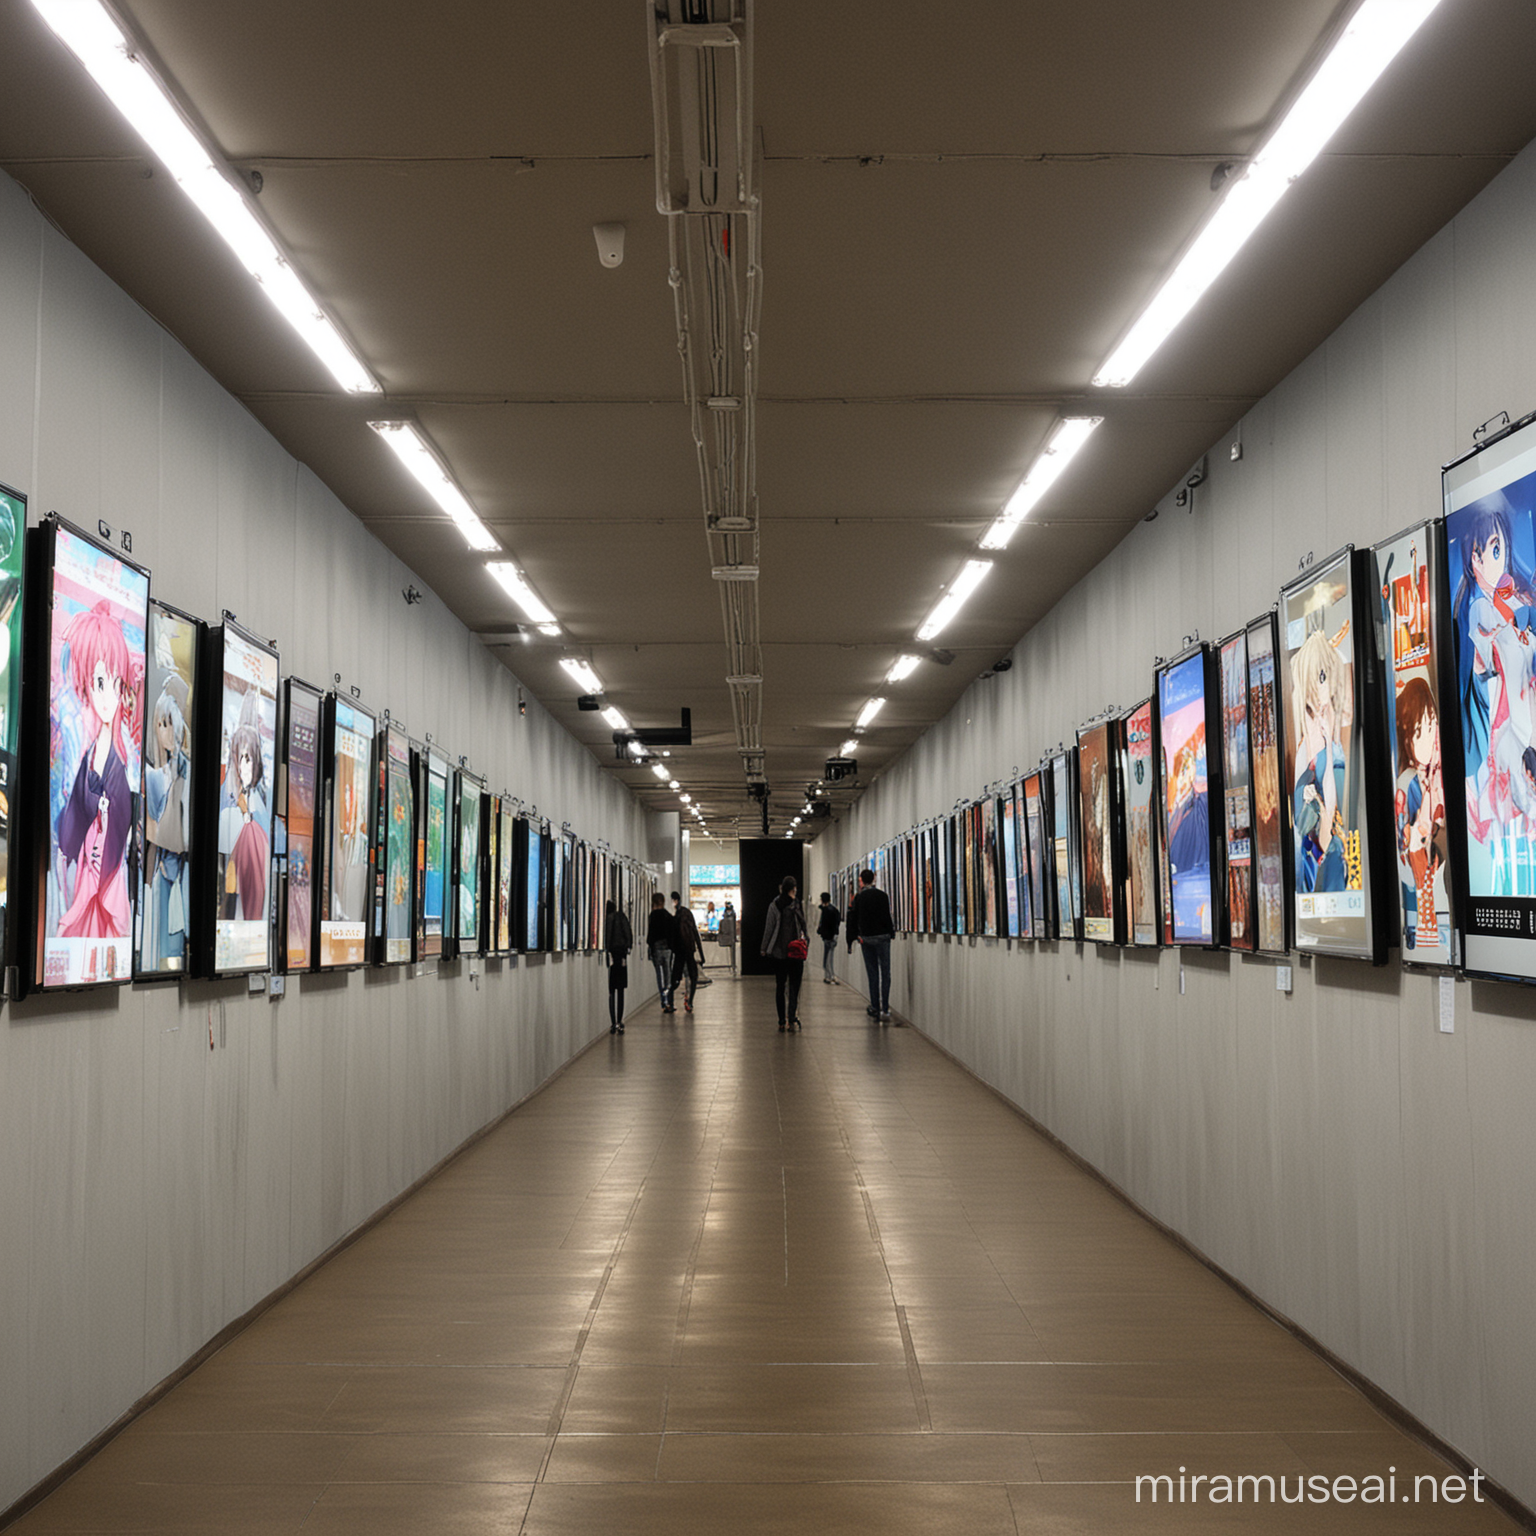 地下展厅，主要用作动漫作品展示，墙壁两侧有电子显示屏